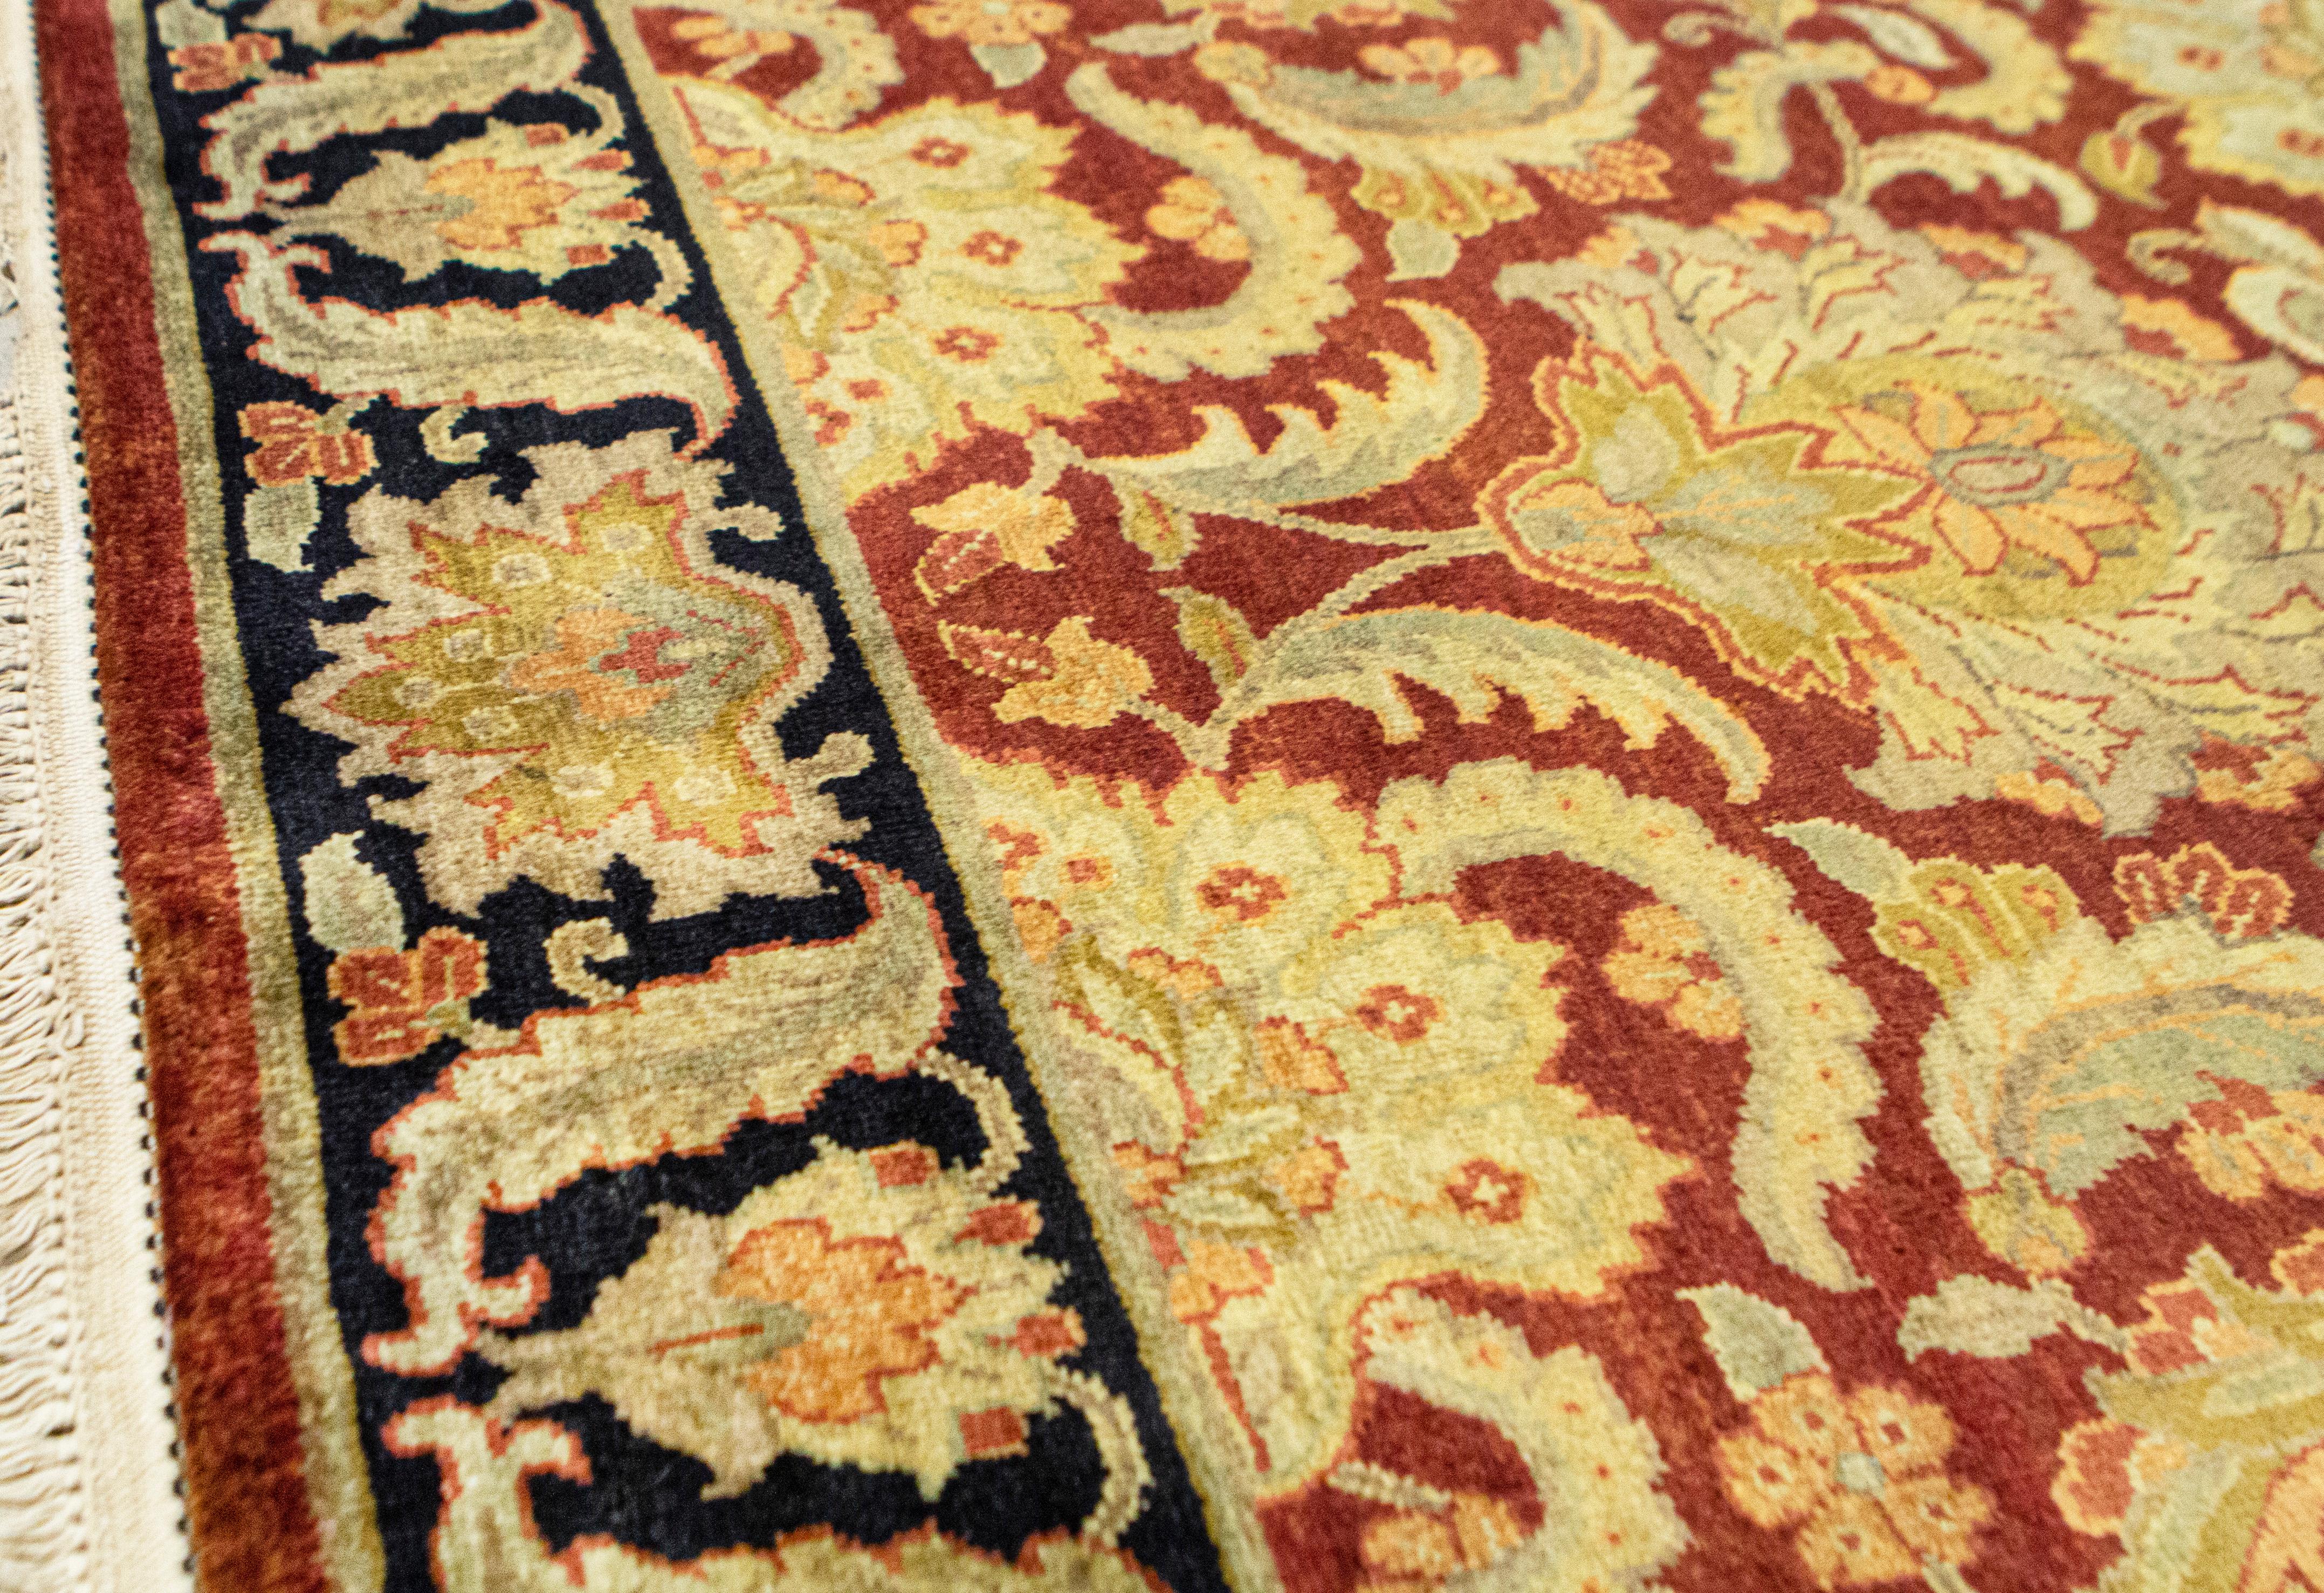 Die Inspiration für diese Kollektion stammt von den indischen Teppichknüpfern des 16. Jahrhunderts, die die schönsten Teppiche für die königlichen Höfe der Mogulkaiser schufen. Basierend auf authentischen orientalischen Designs und handgewebt im